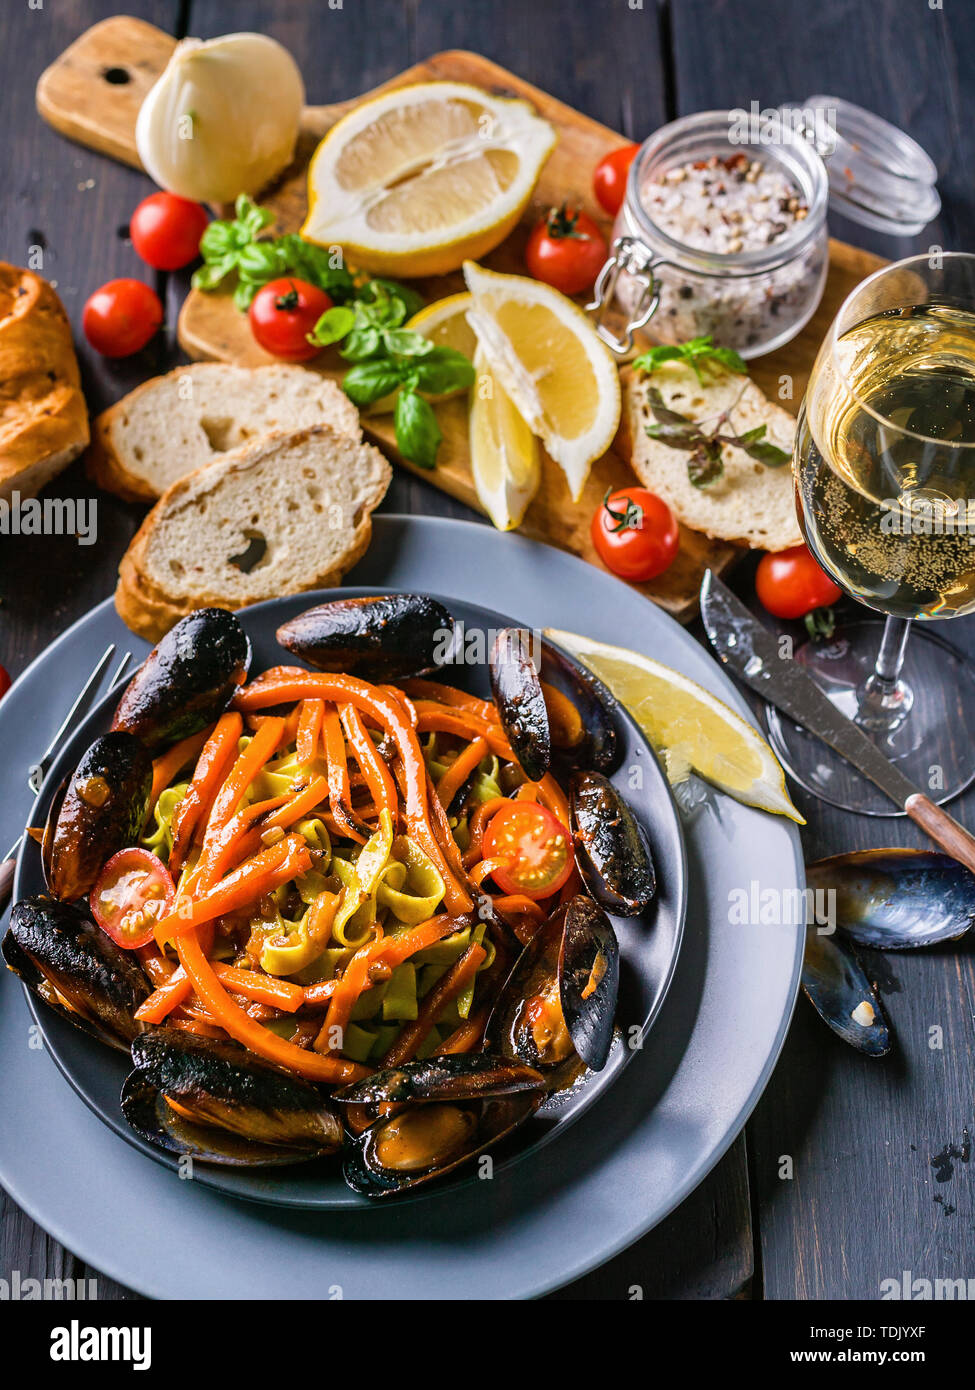 La pasta italiana con le cozze e le verdure. Una tradizionale cucina mediterranea. Scuro dello sfondo in legno Foto Stock